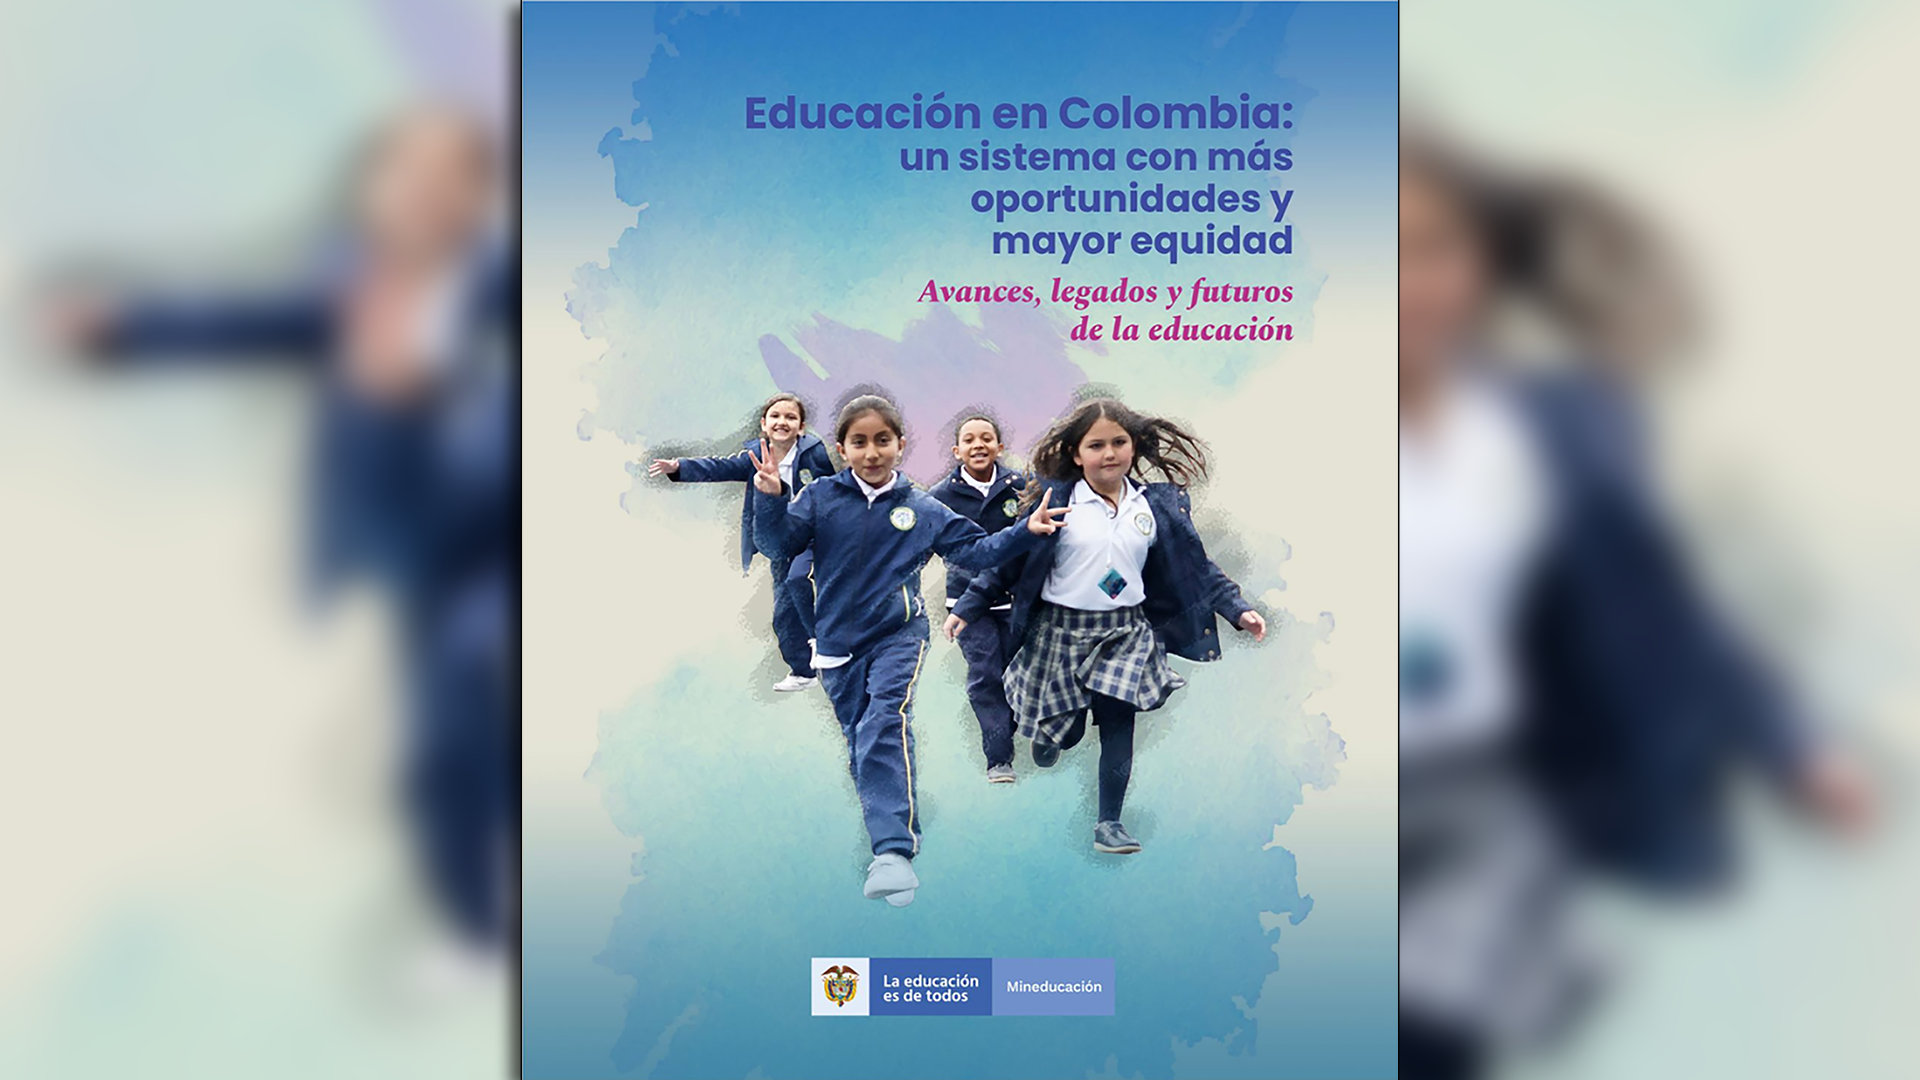 "Educación en Colombia", el libro de la ministra Angulo en el que se incluye el informe de Escamilla y Fung